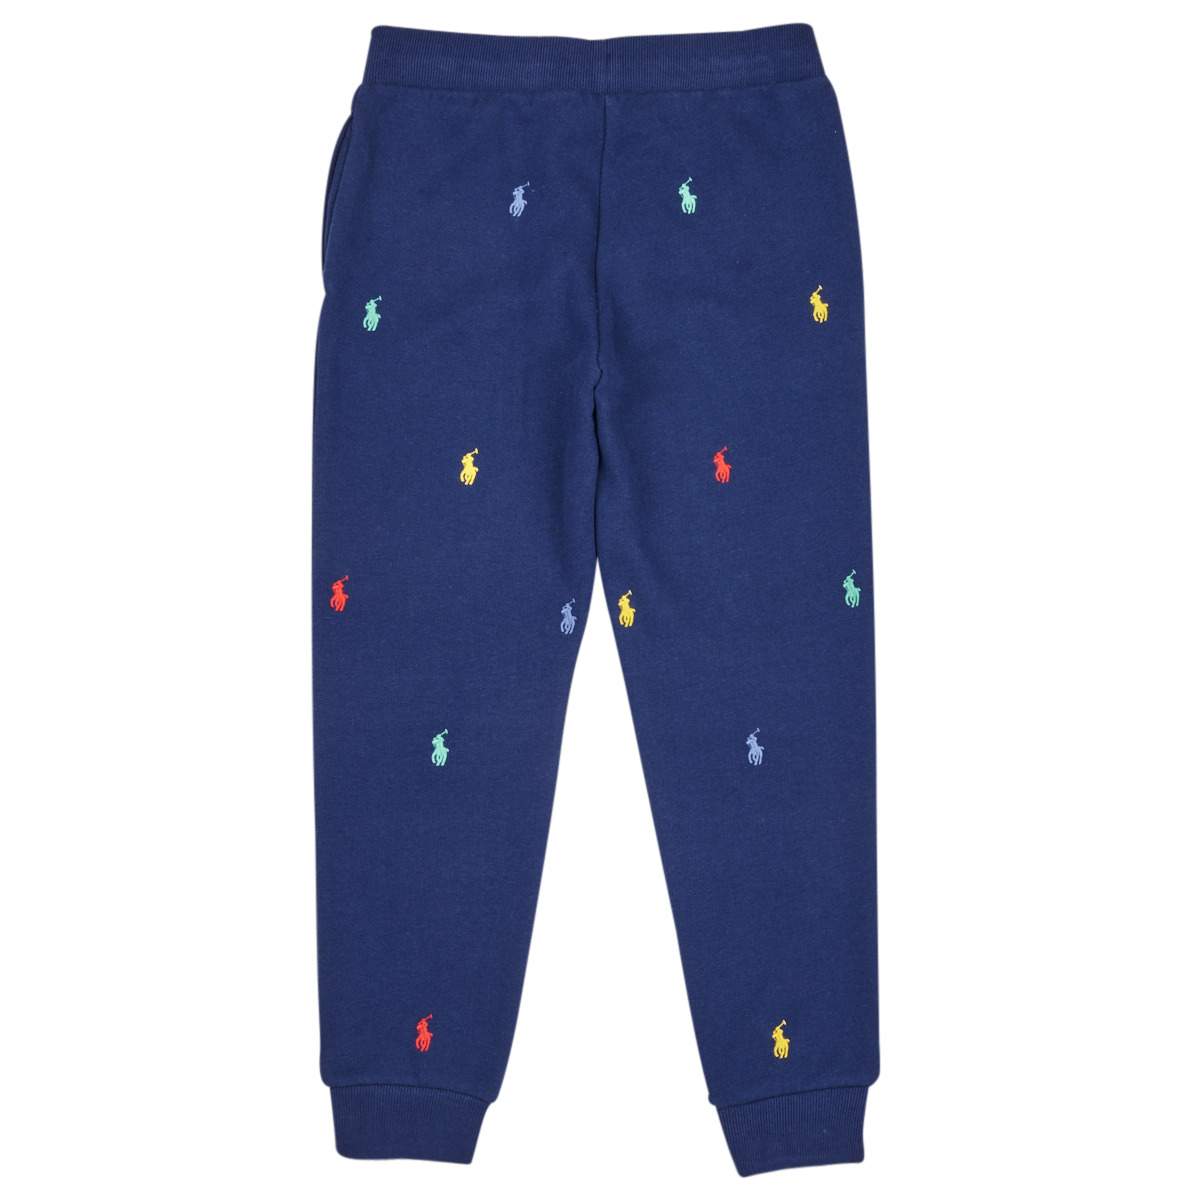 Polo Ralph Lauren Marine / Multicolore PO PANT-PANTS-ATHLETIC PX4jOsdg